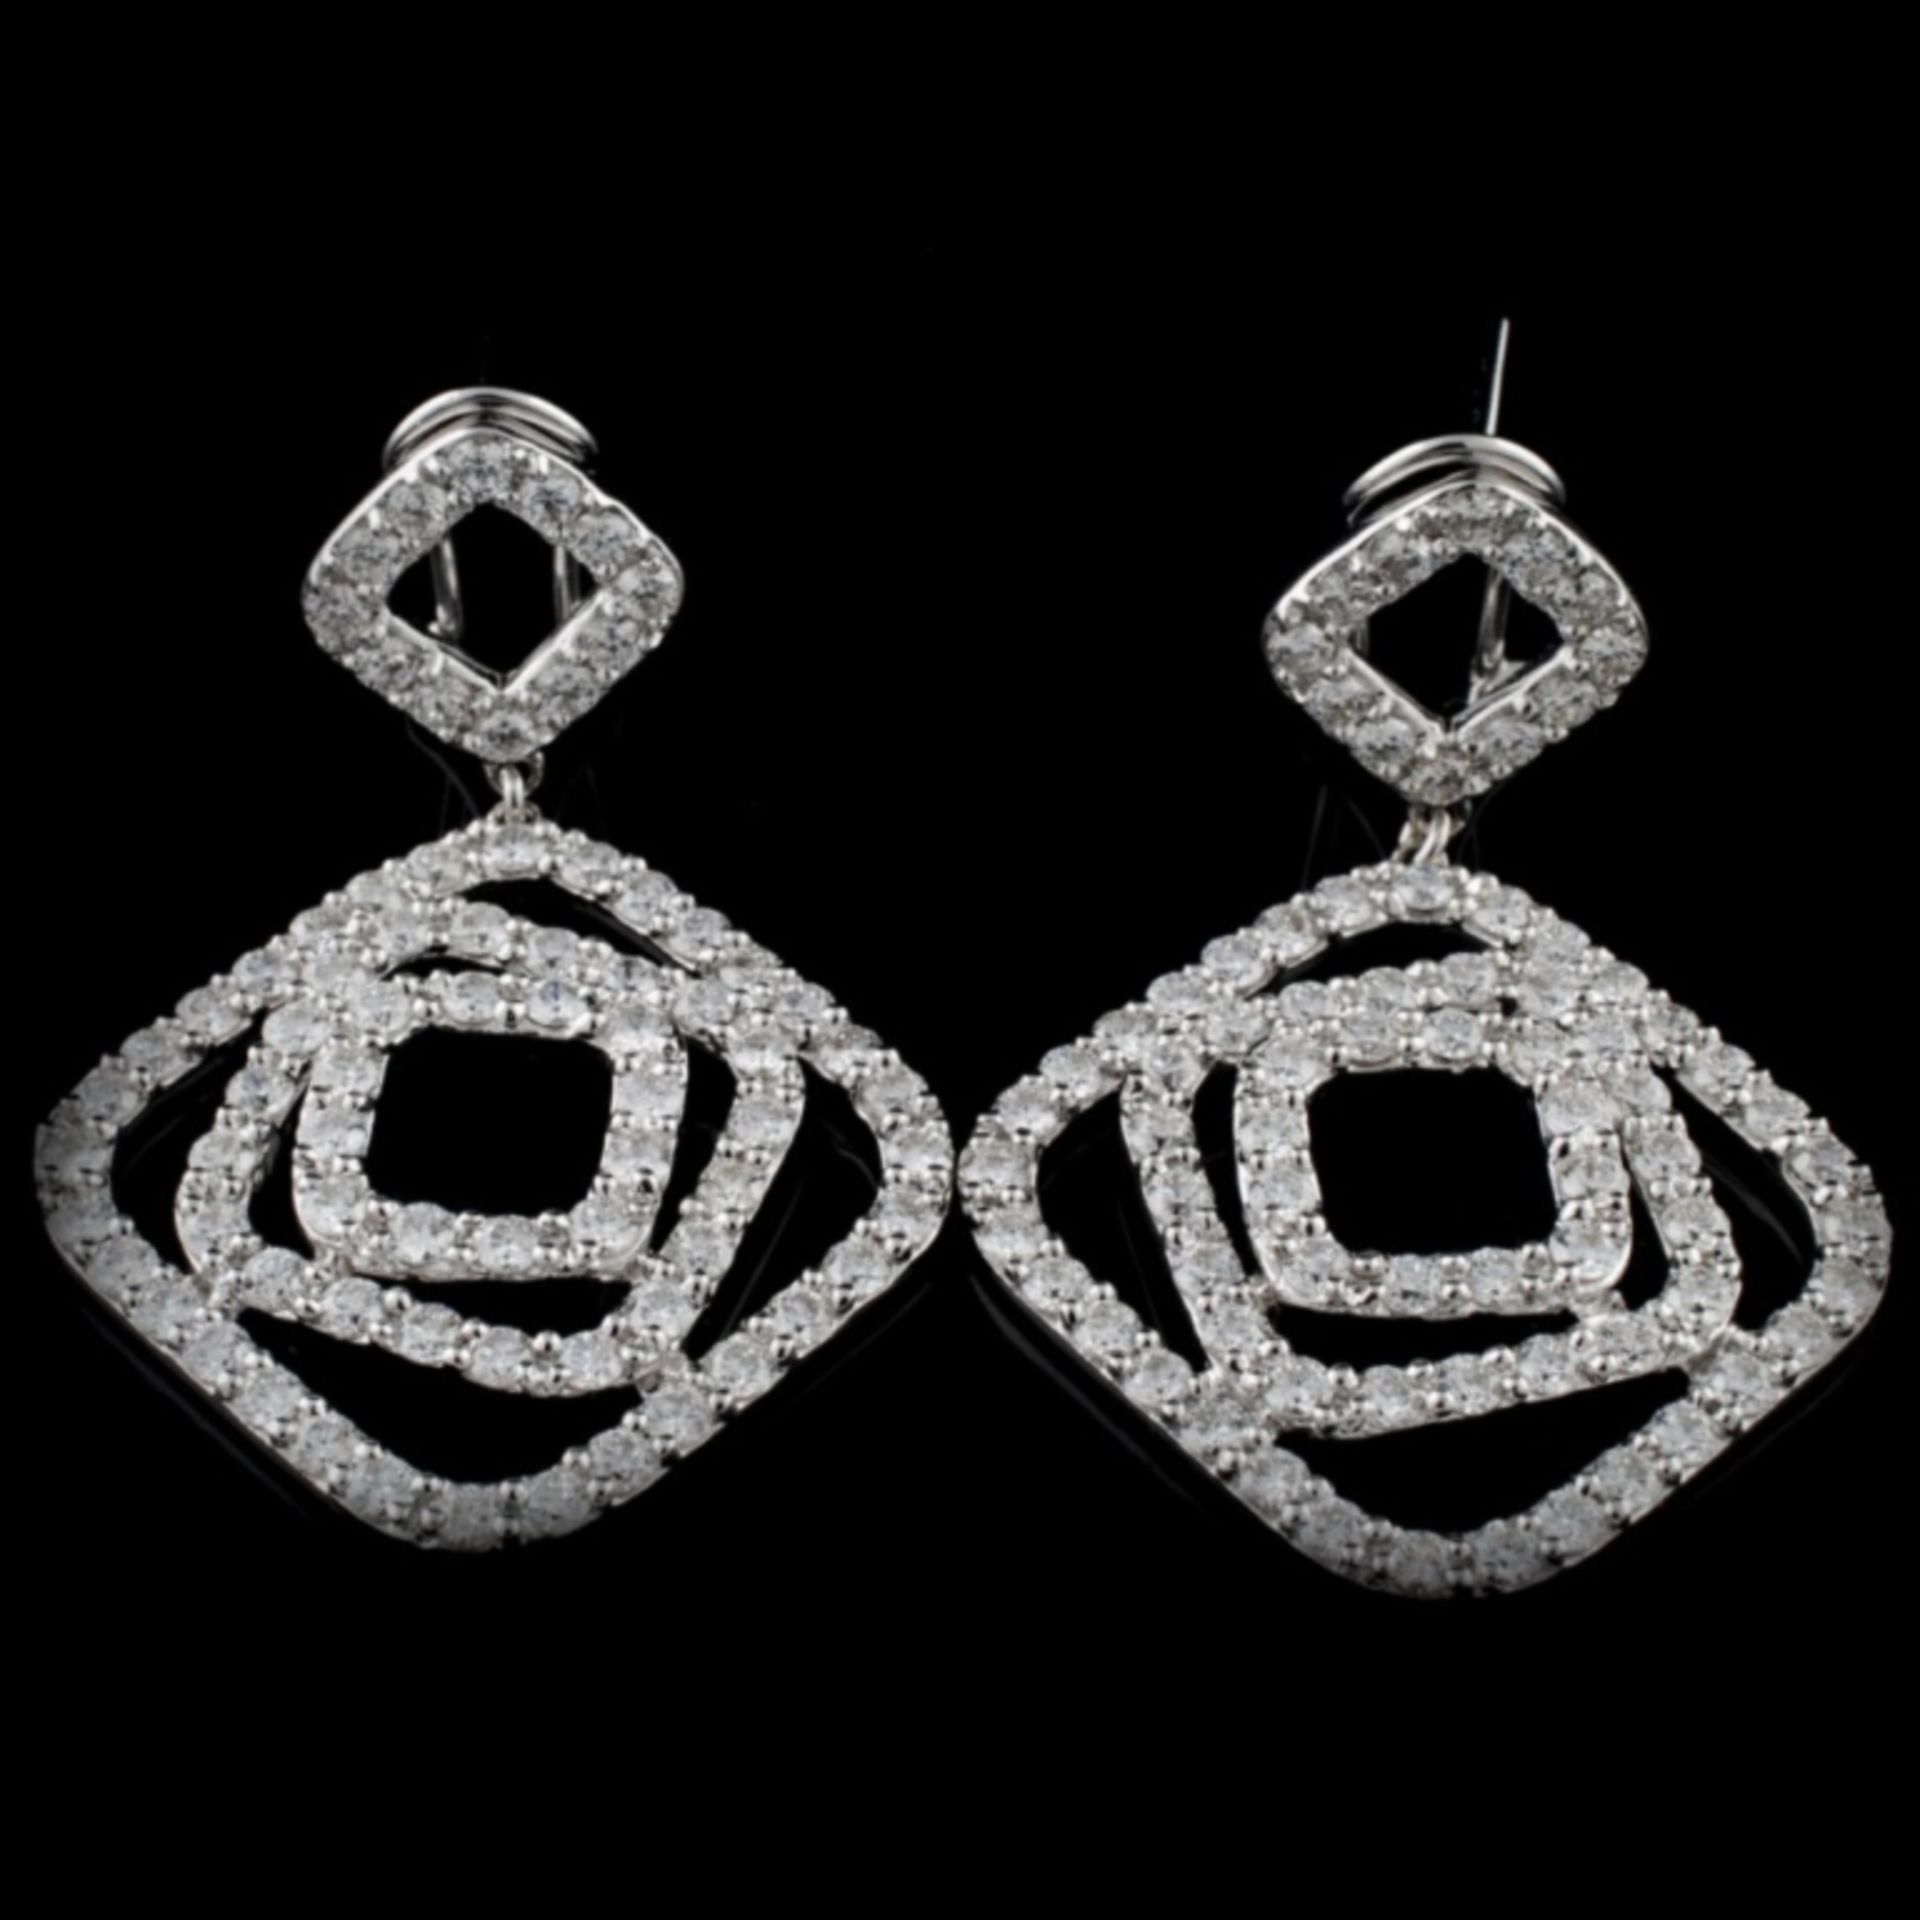 18K White Gold 3.65ct Diamond Earrings - Image 2 of 3